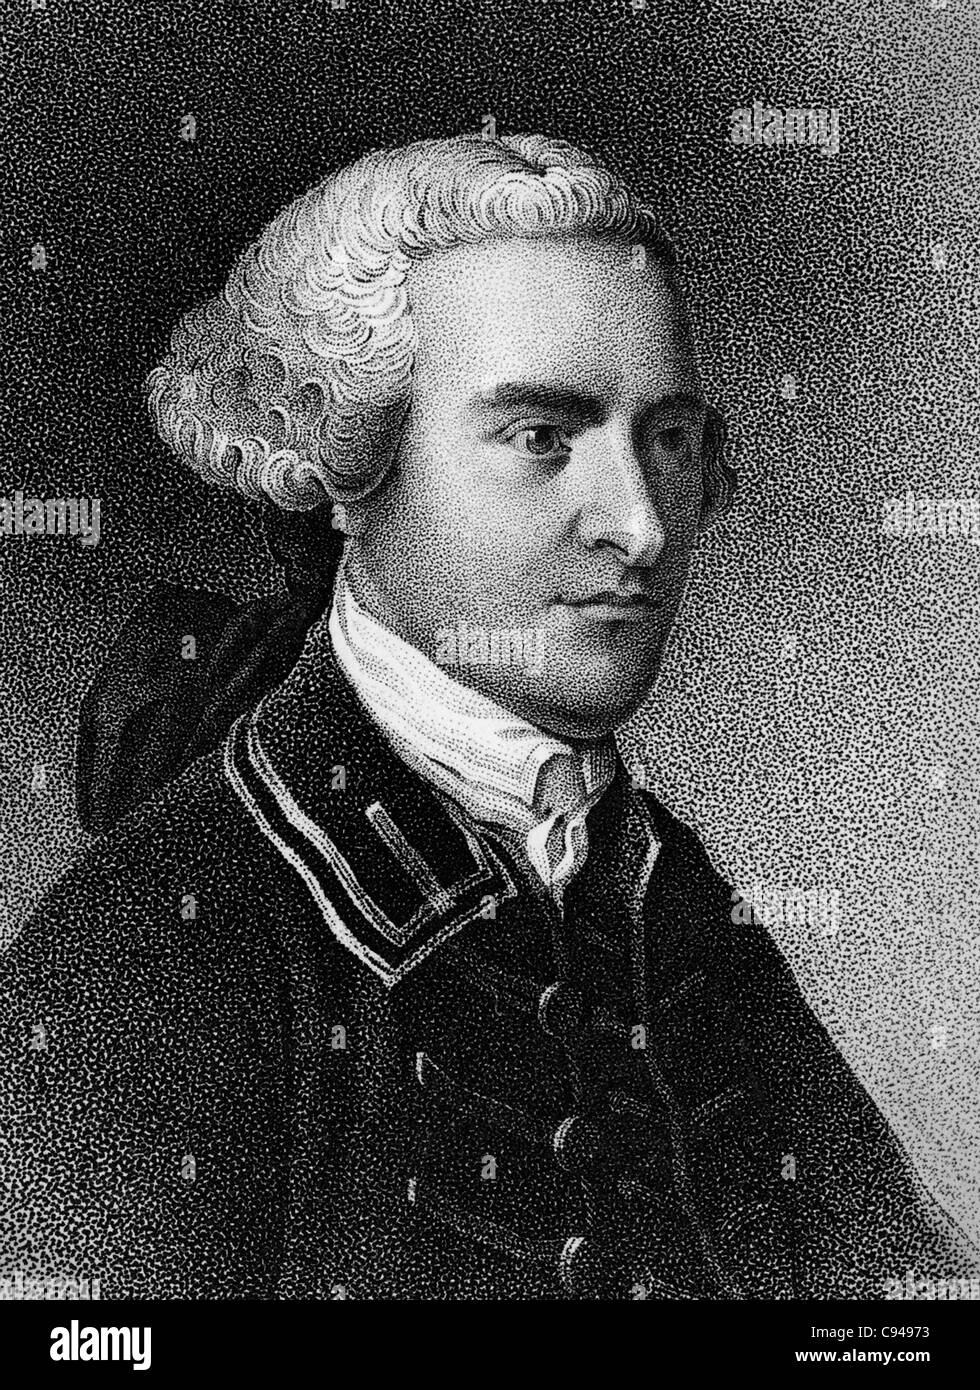 Portrait Vintage print de l'homme d'État américain John Hancock (1737 - 1793) - Président de la Deuxième Congrès Continental de 1775 à 1777, et la première personne à signer la déclaration d'indépendance. Banque D'Images